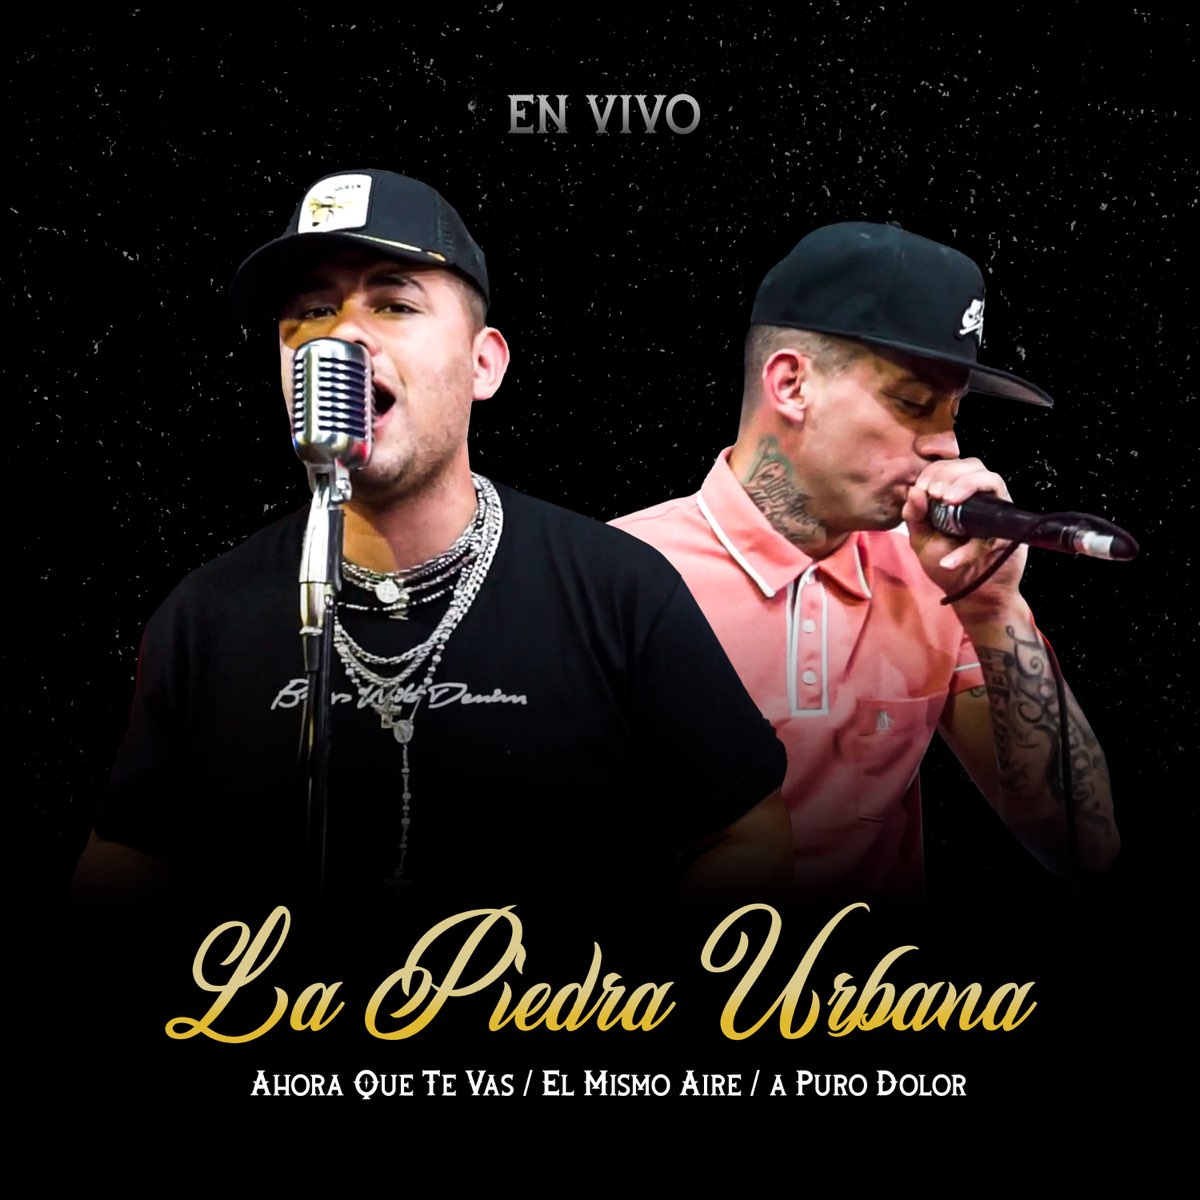 Ahora Que Te Vas / El Mismo Aire / a Puro Dolor (En Vivo) Single de La Piedra Urbana en Music